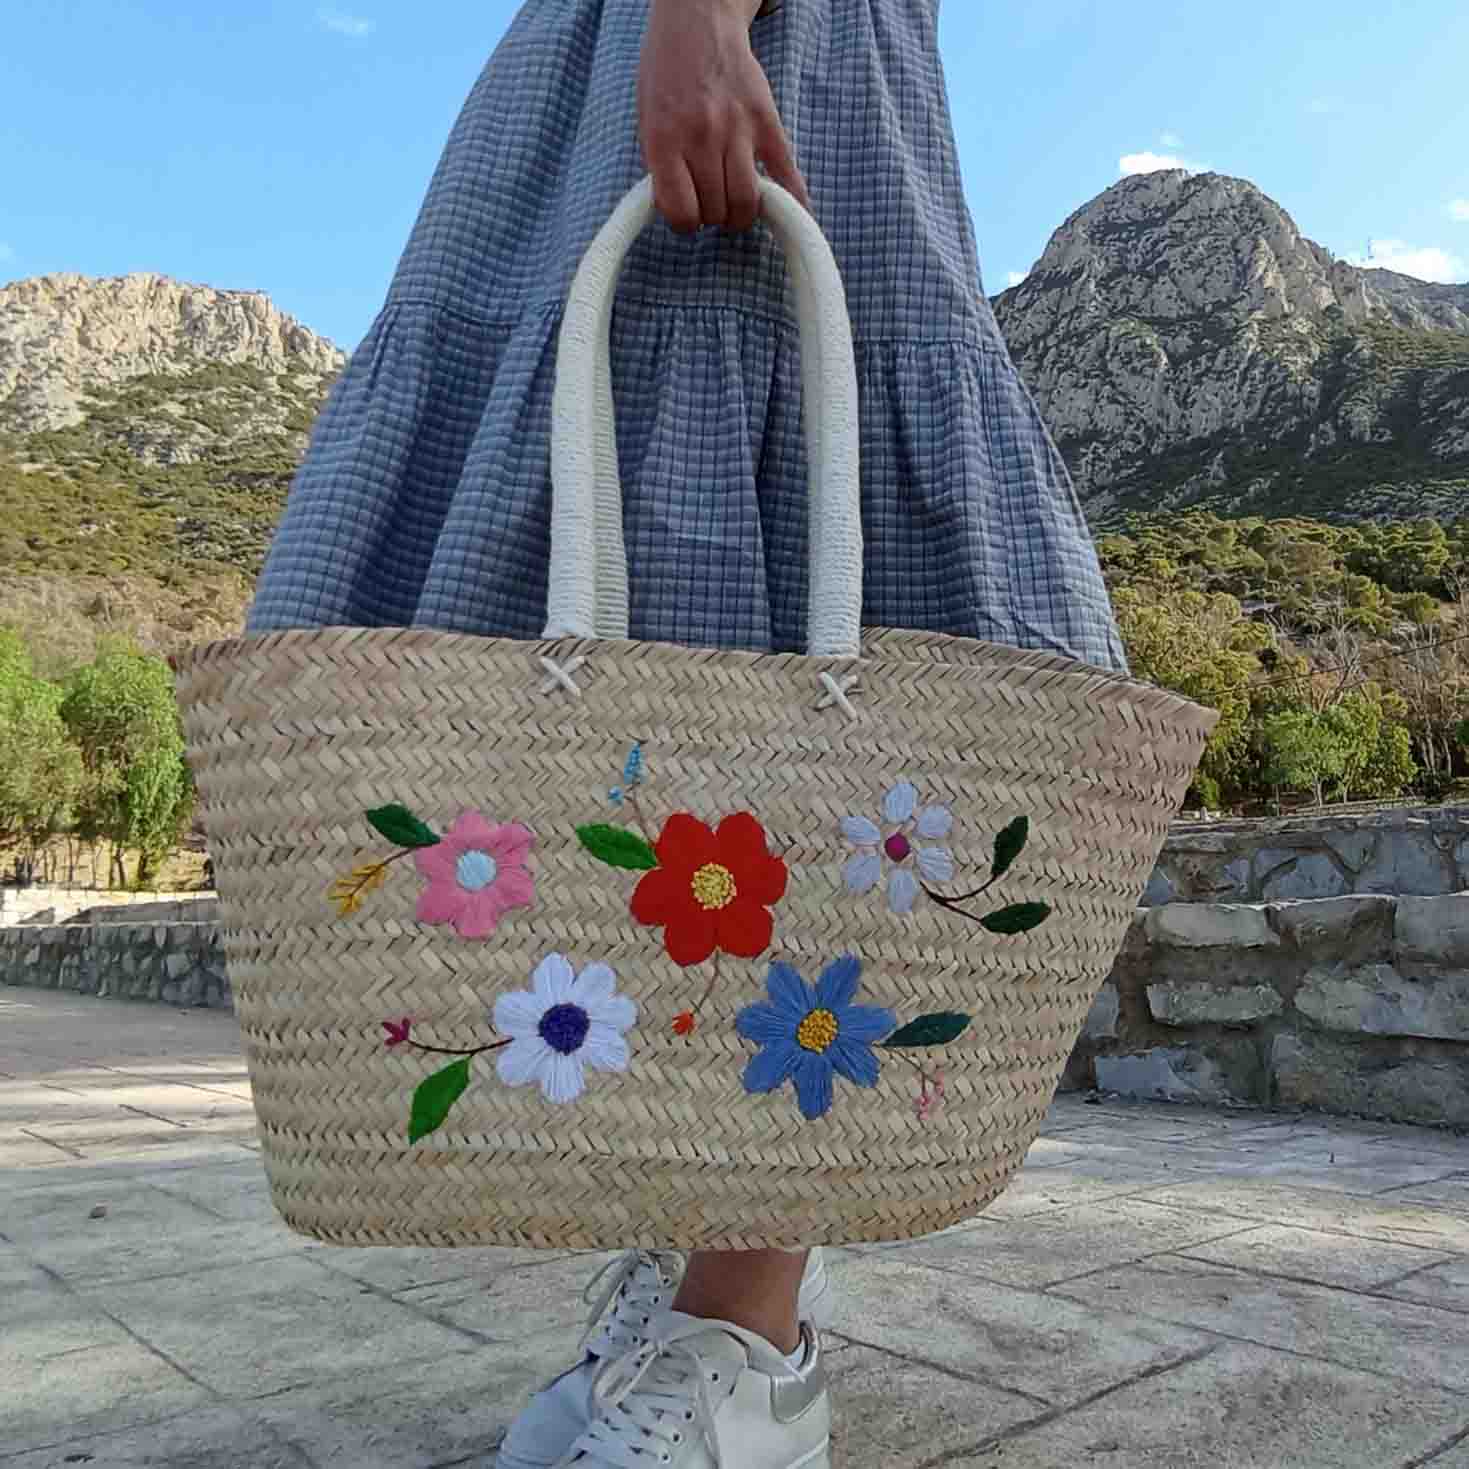 Hand embroidered floral bassinet bag